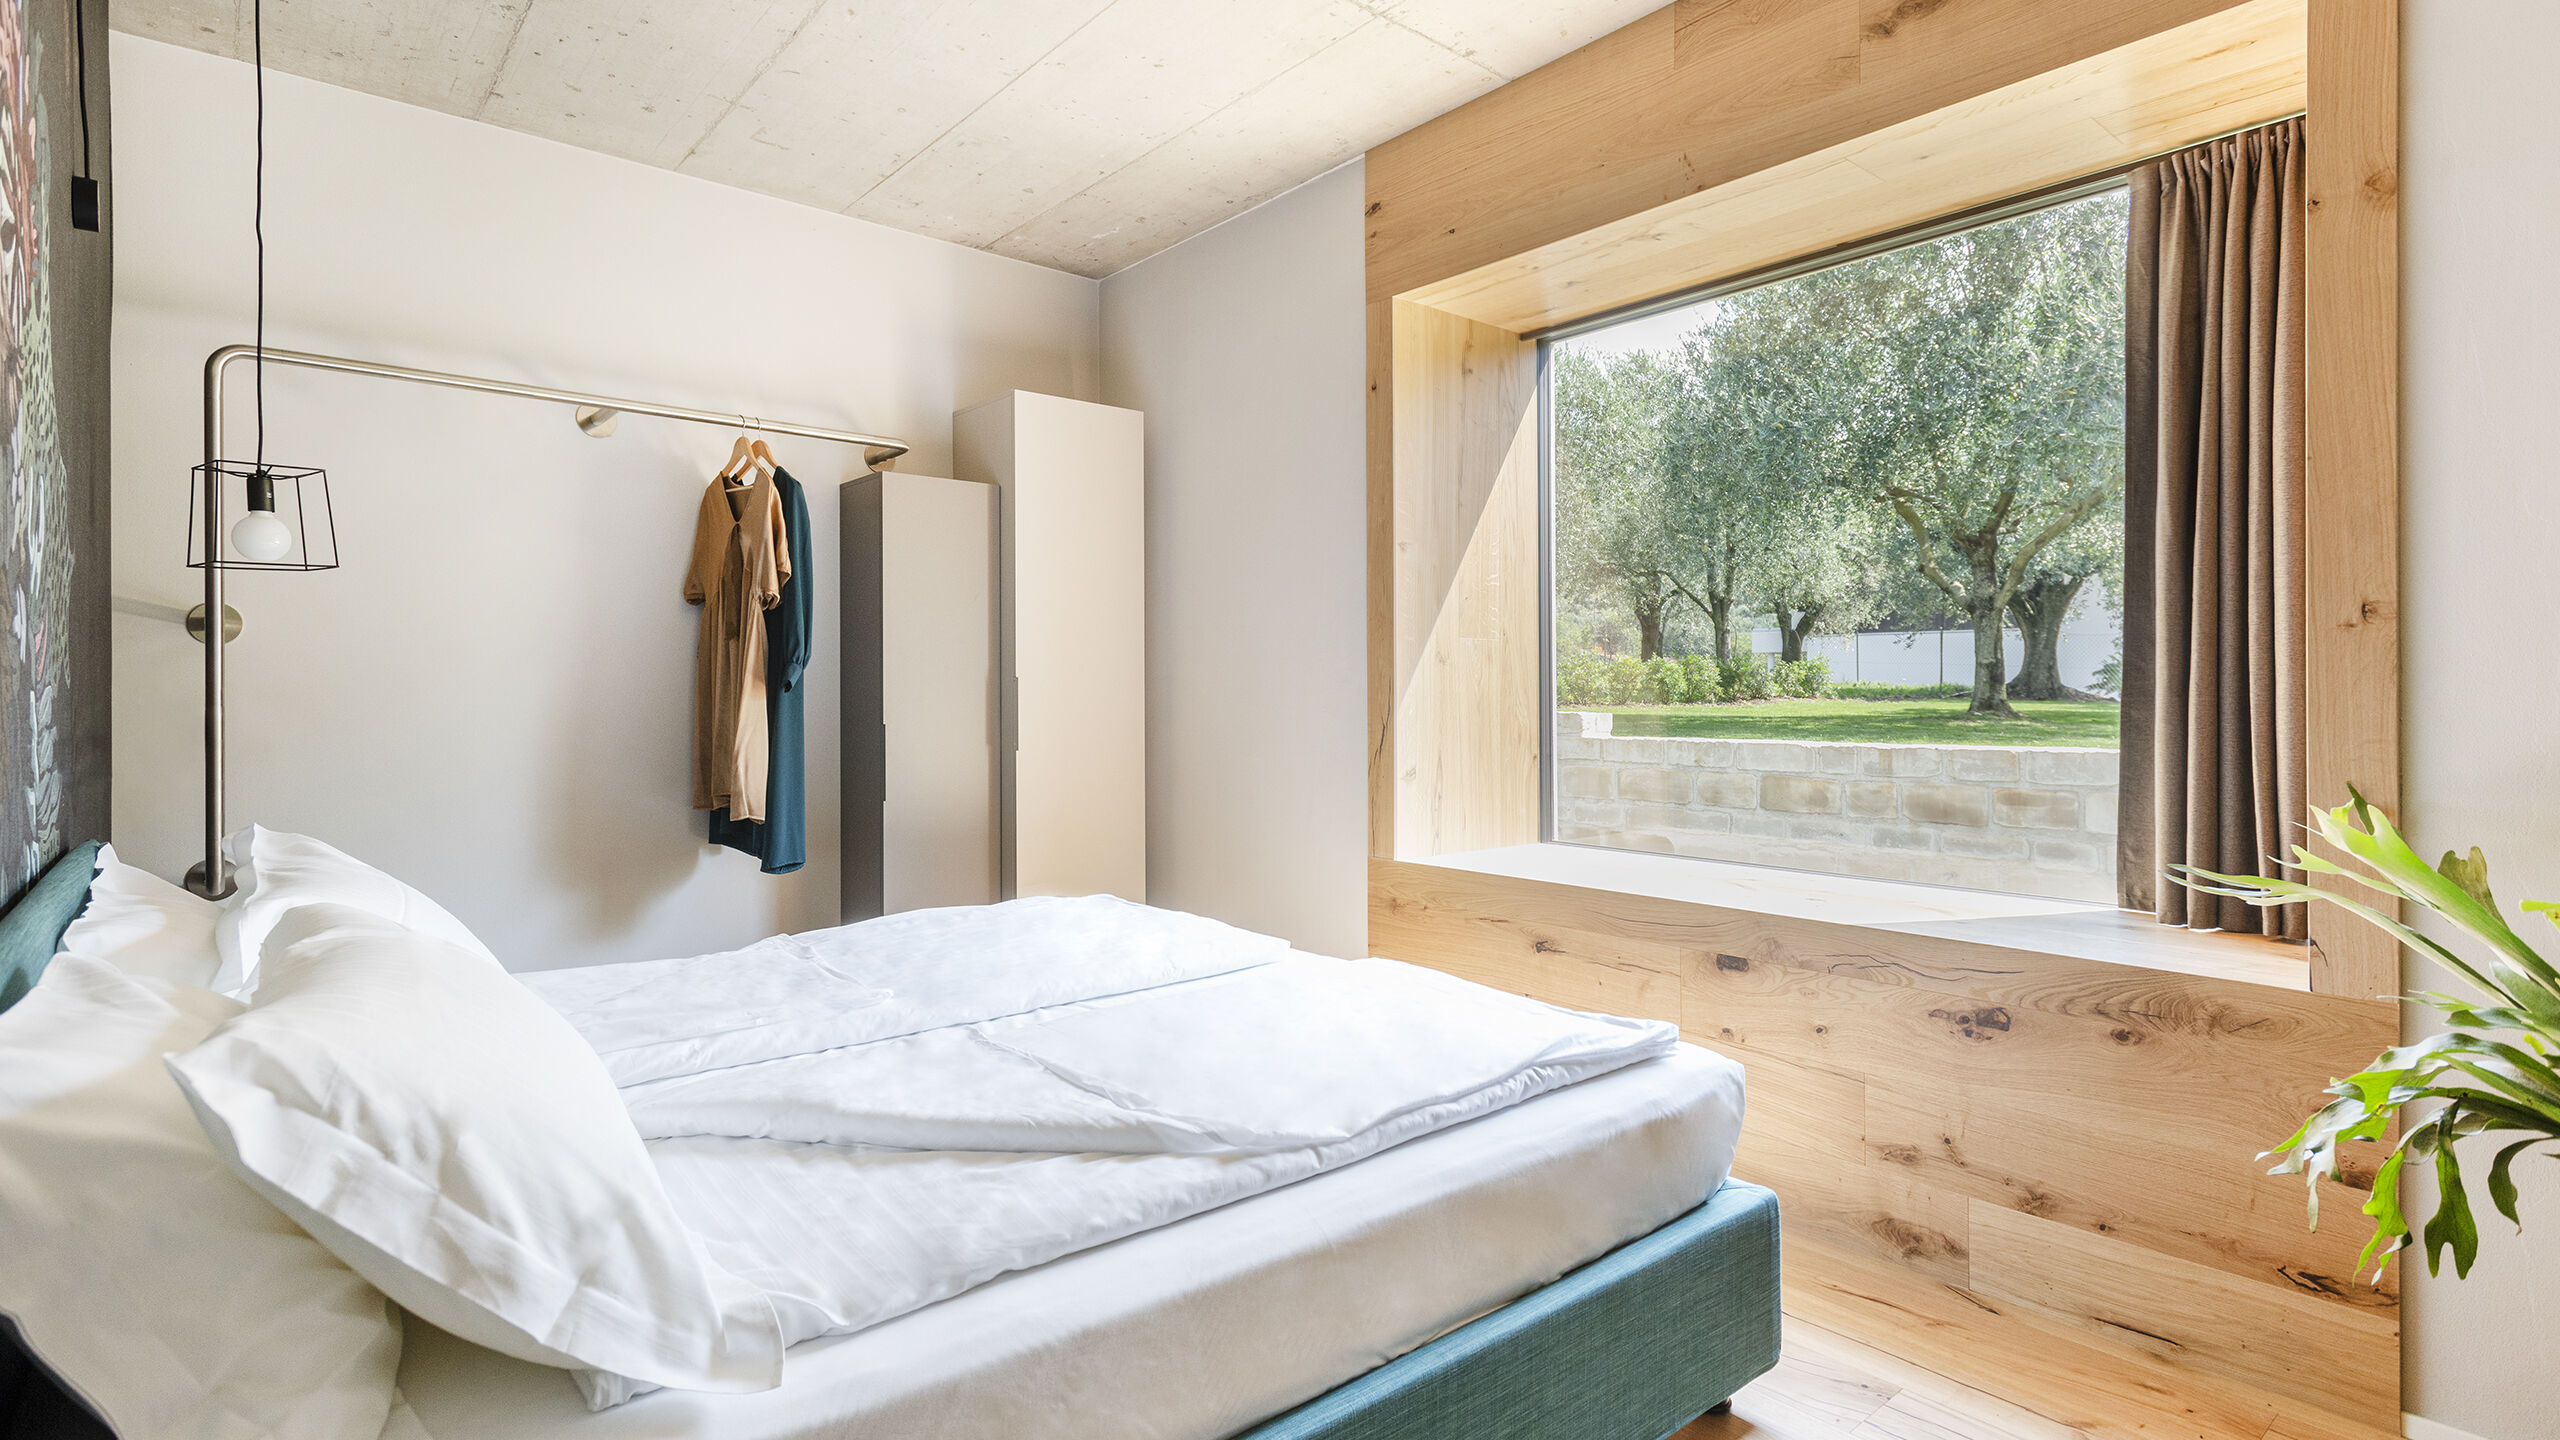 Oleeva Garda Living Suiten, Zimmer und Apartments, nur wenige Minuten vom See und Riva del Garda im Trentino entfernt Oleeva Garda Living | Rooms and Suite